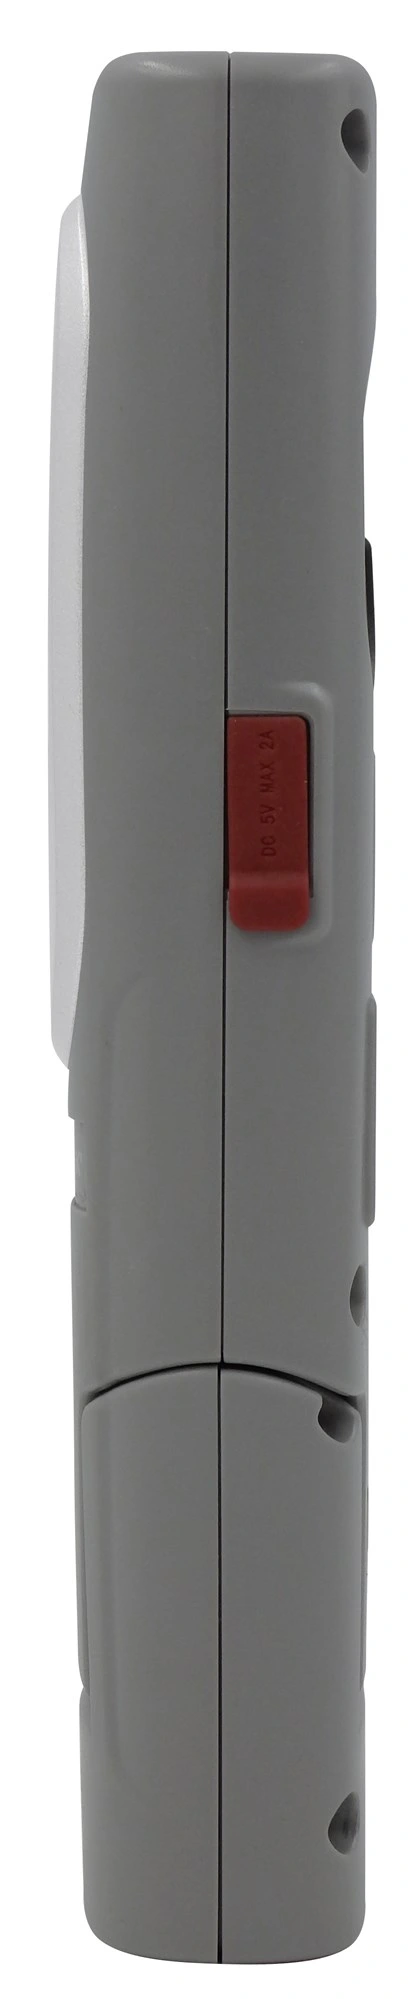 Lampada LED portatile COMPACT 600, ricaricabile Li-Ion 3,7V